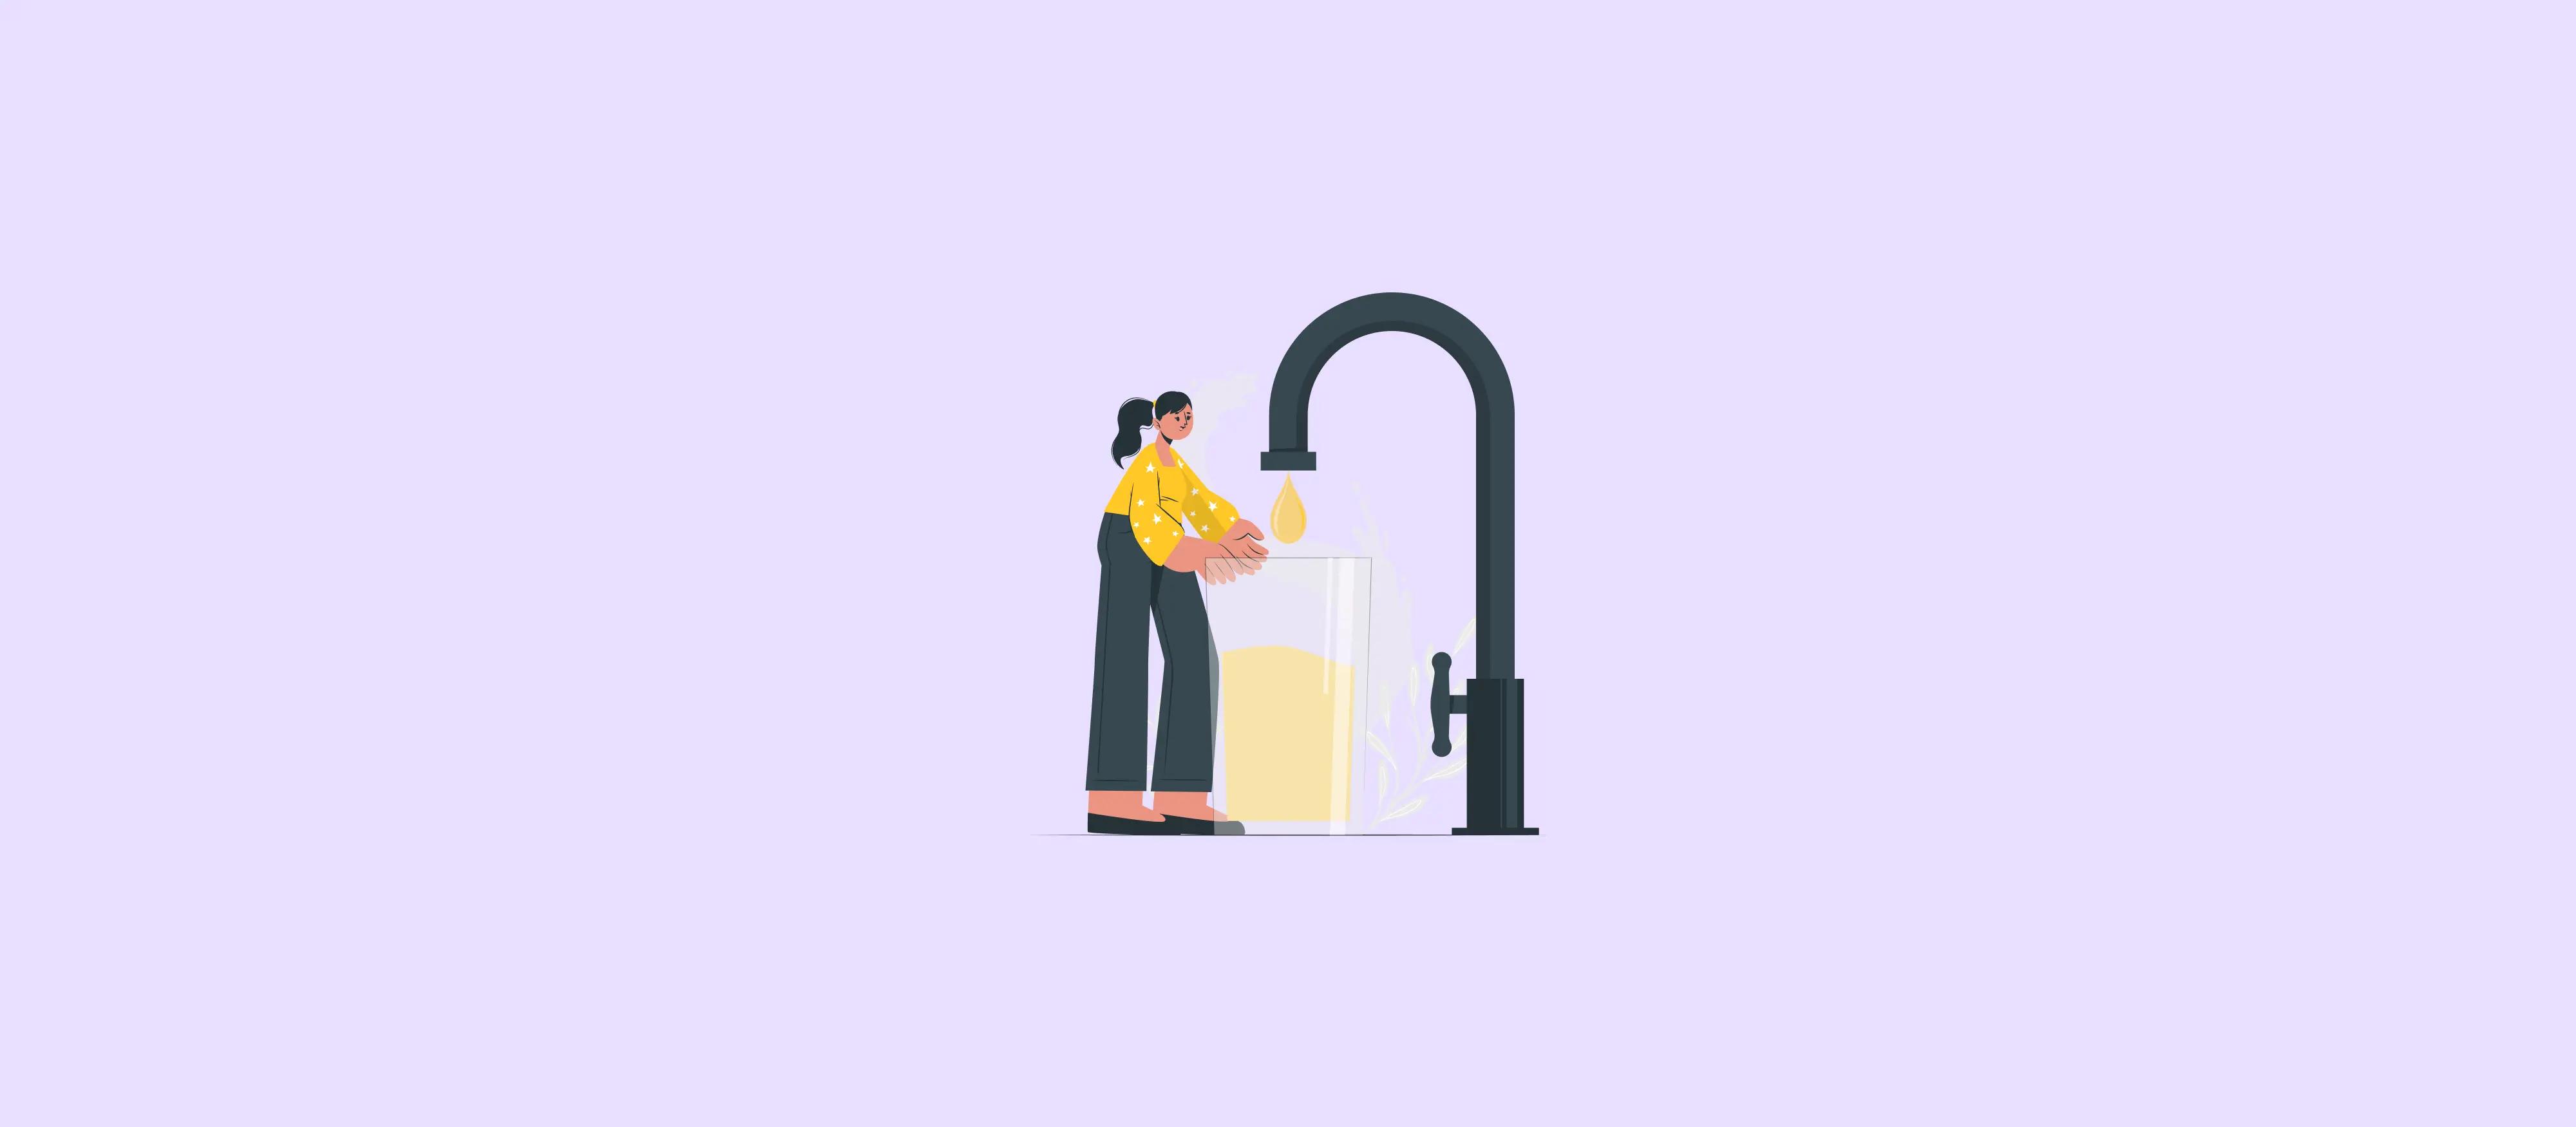 Limpeza da caixa d’água é responsabilidade do inquilino ou proprietário